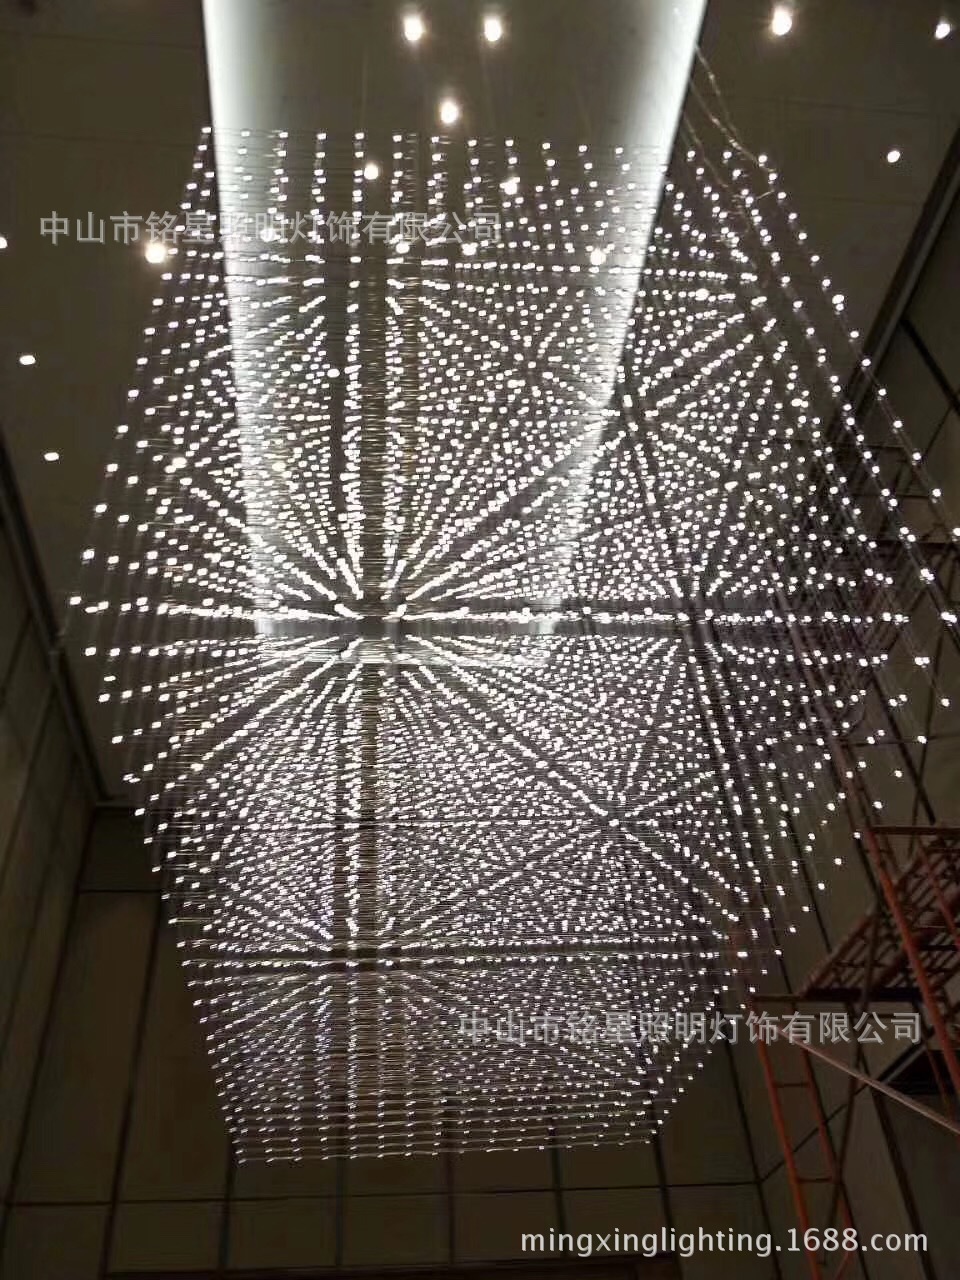 专业酒店大堂大型光立方吊灯厂家定制售楼部展厅LED光立方体灯具示例图11